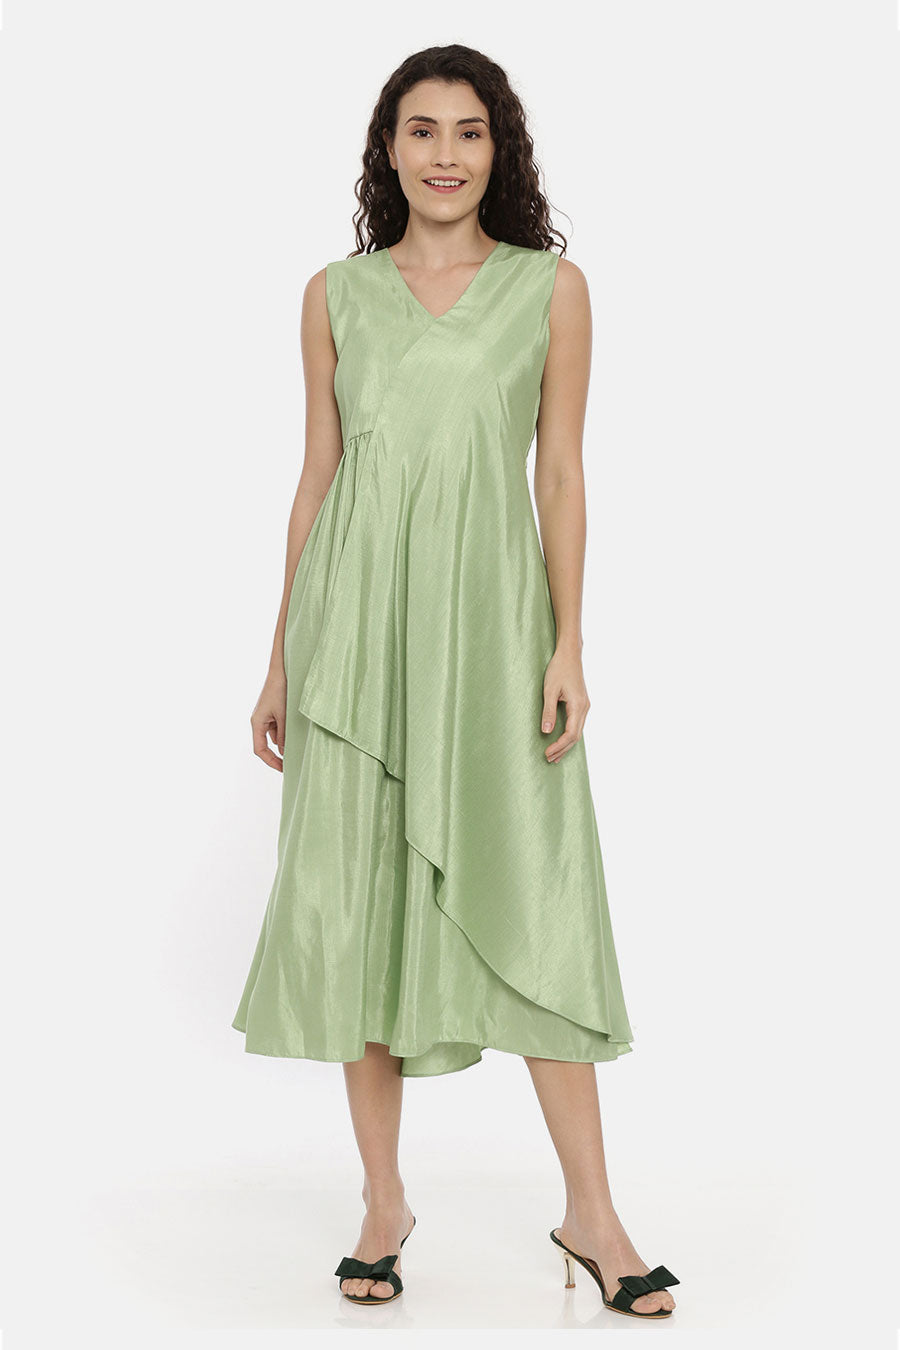 Green Asymmetrical Drape Dress